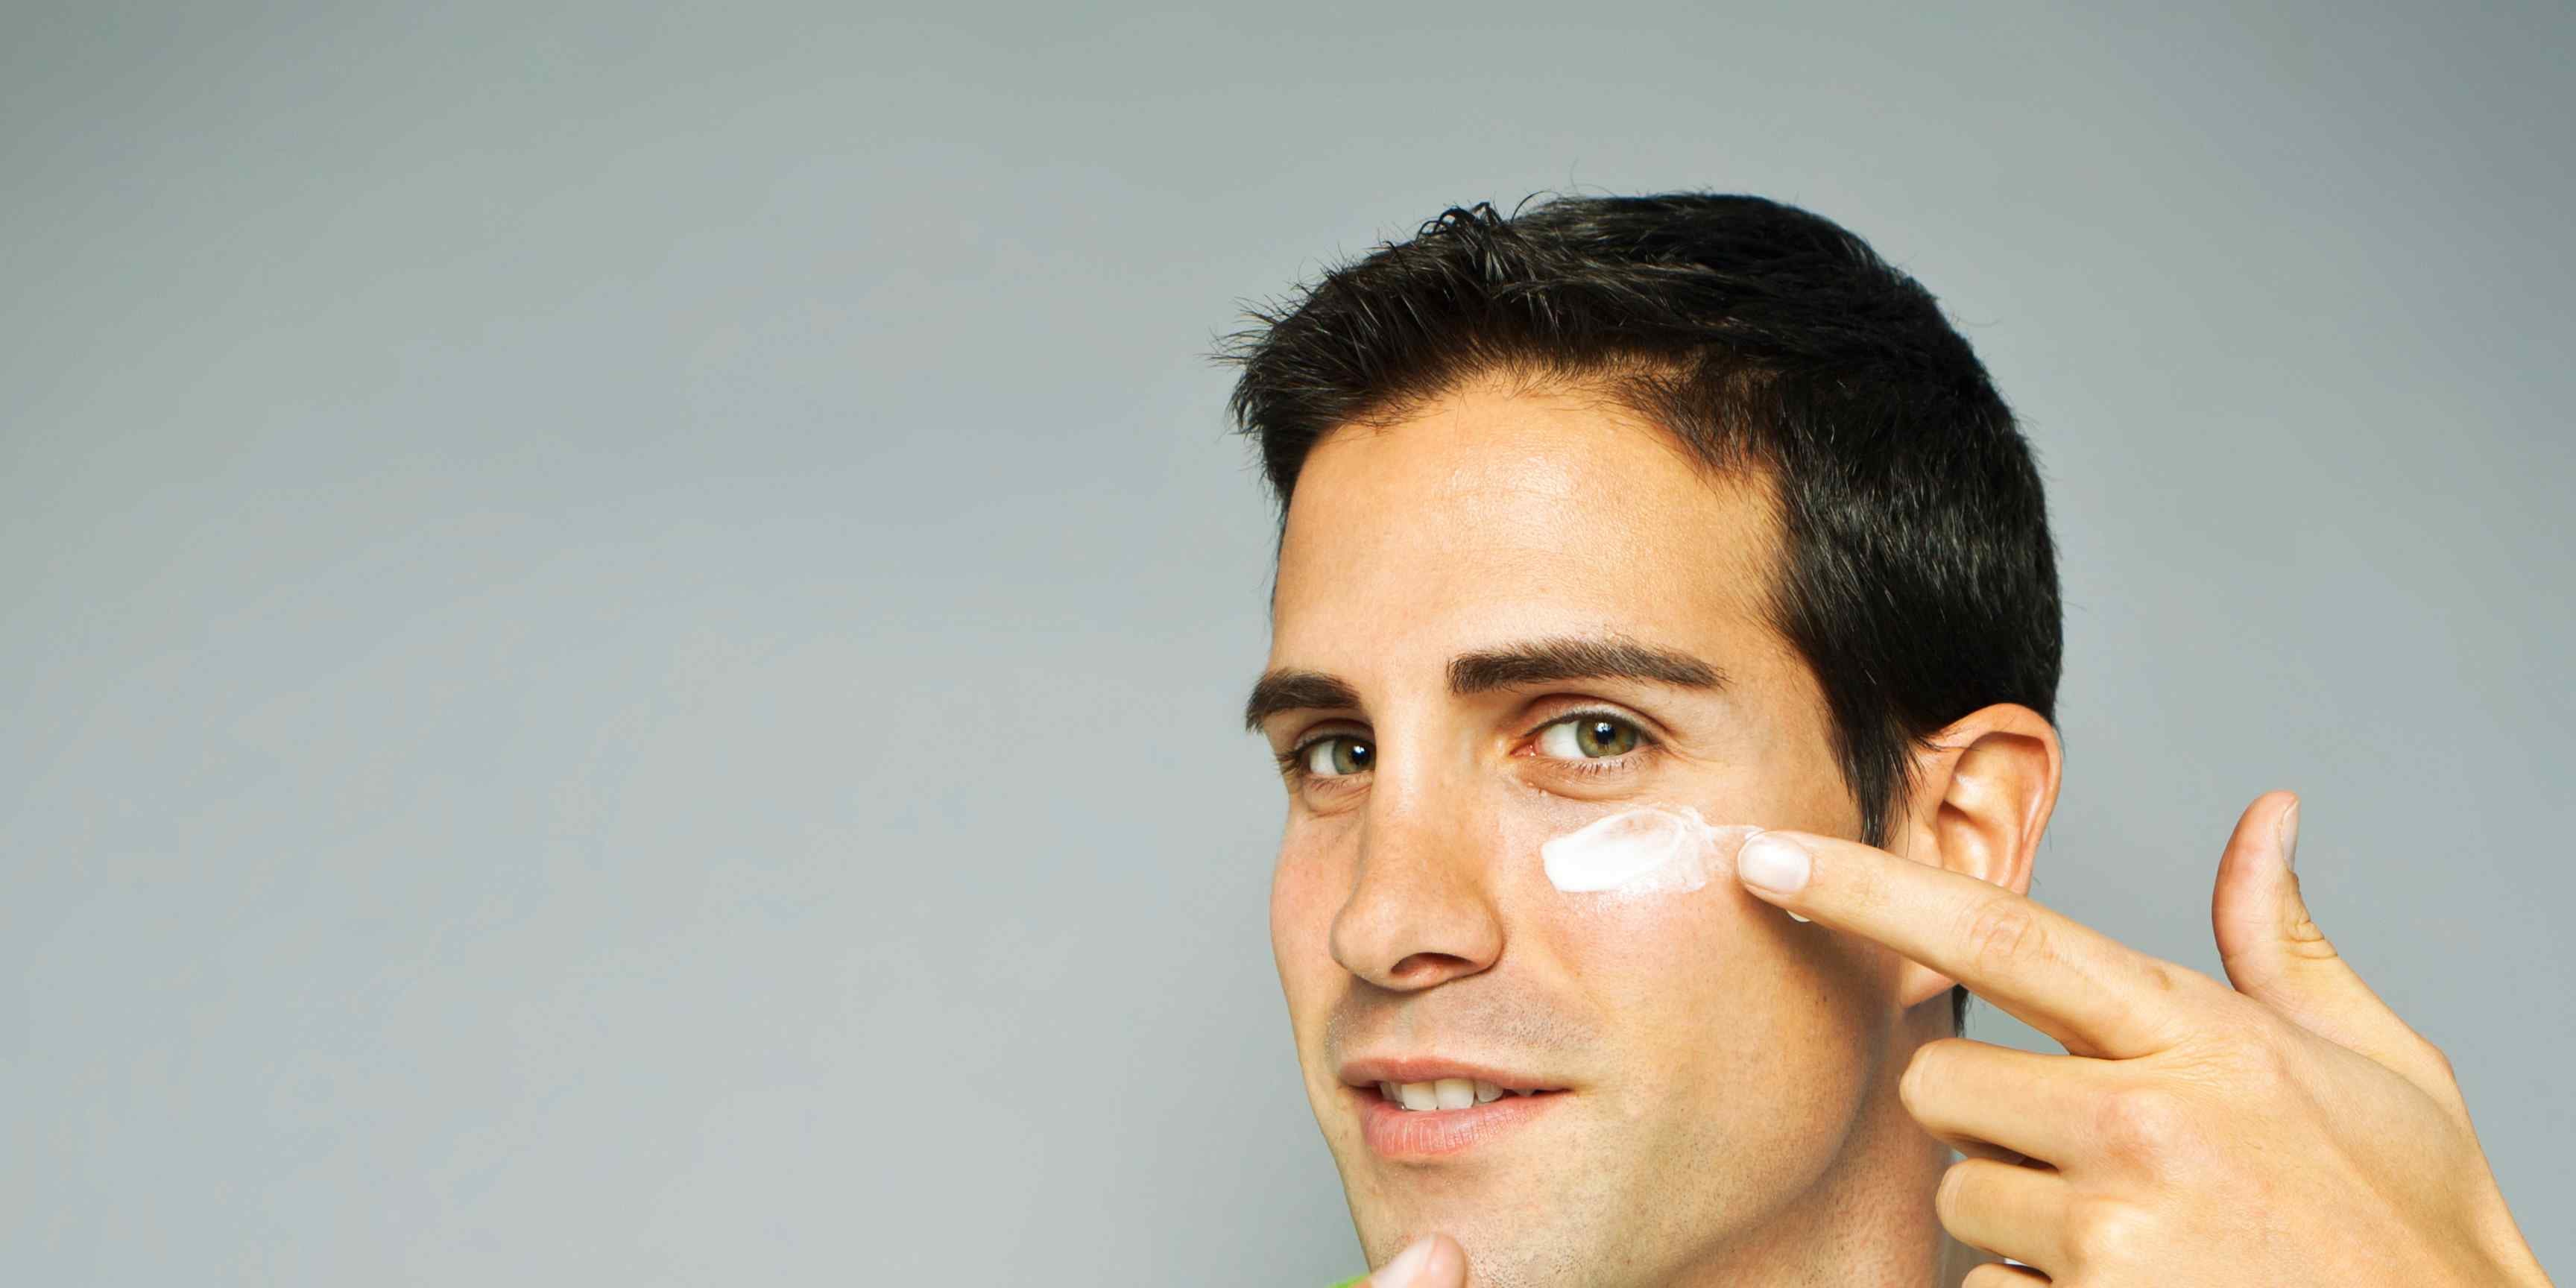 Facial care routine for men